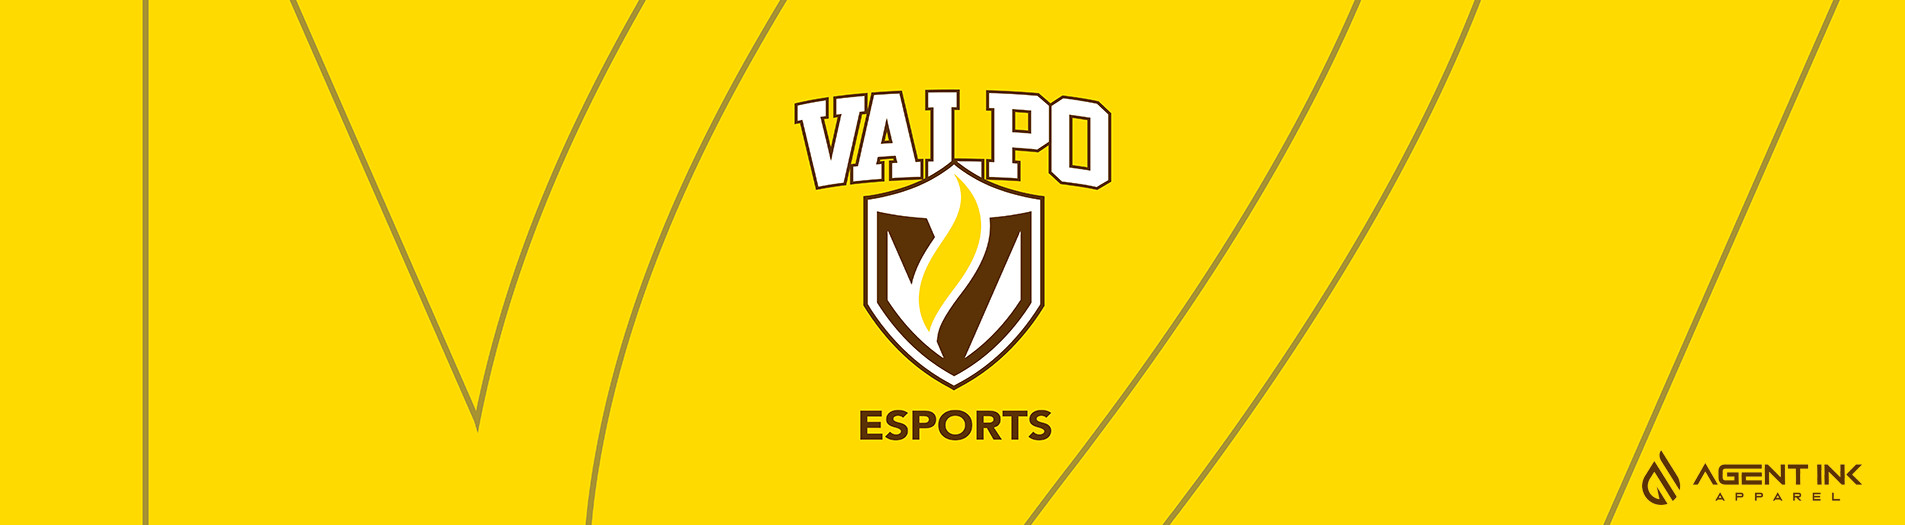 Valparaiso Esports